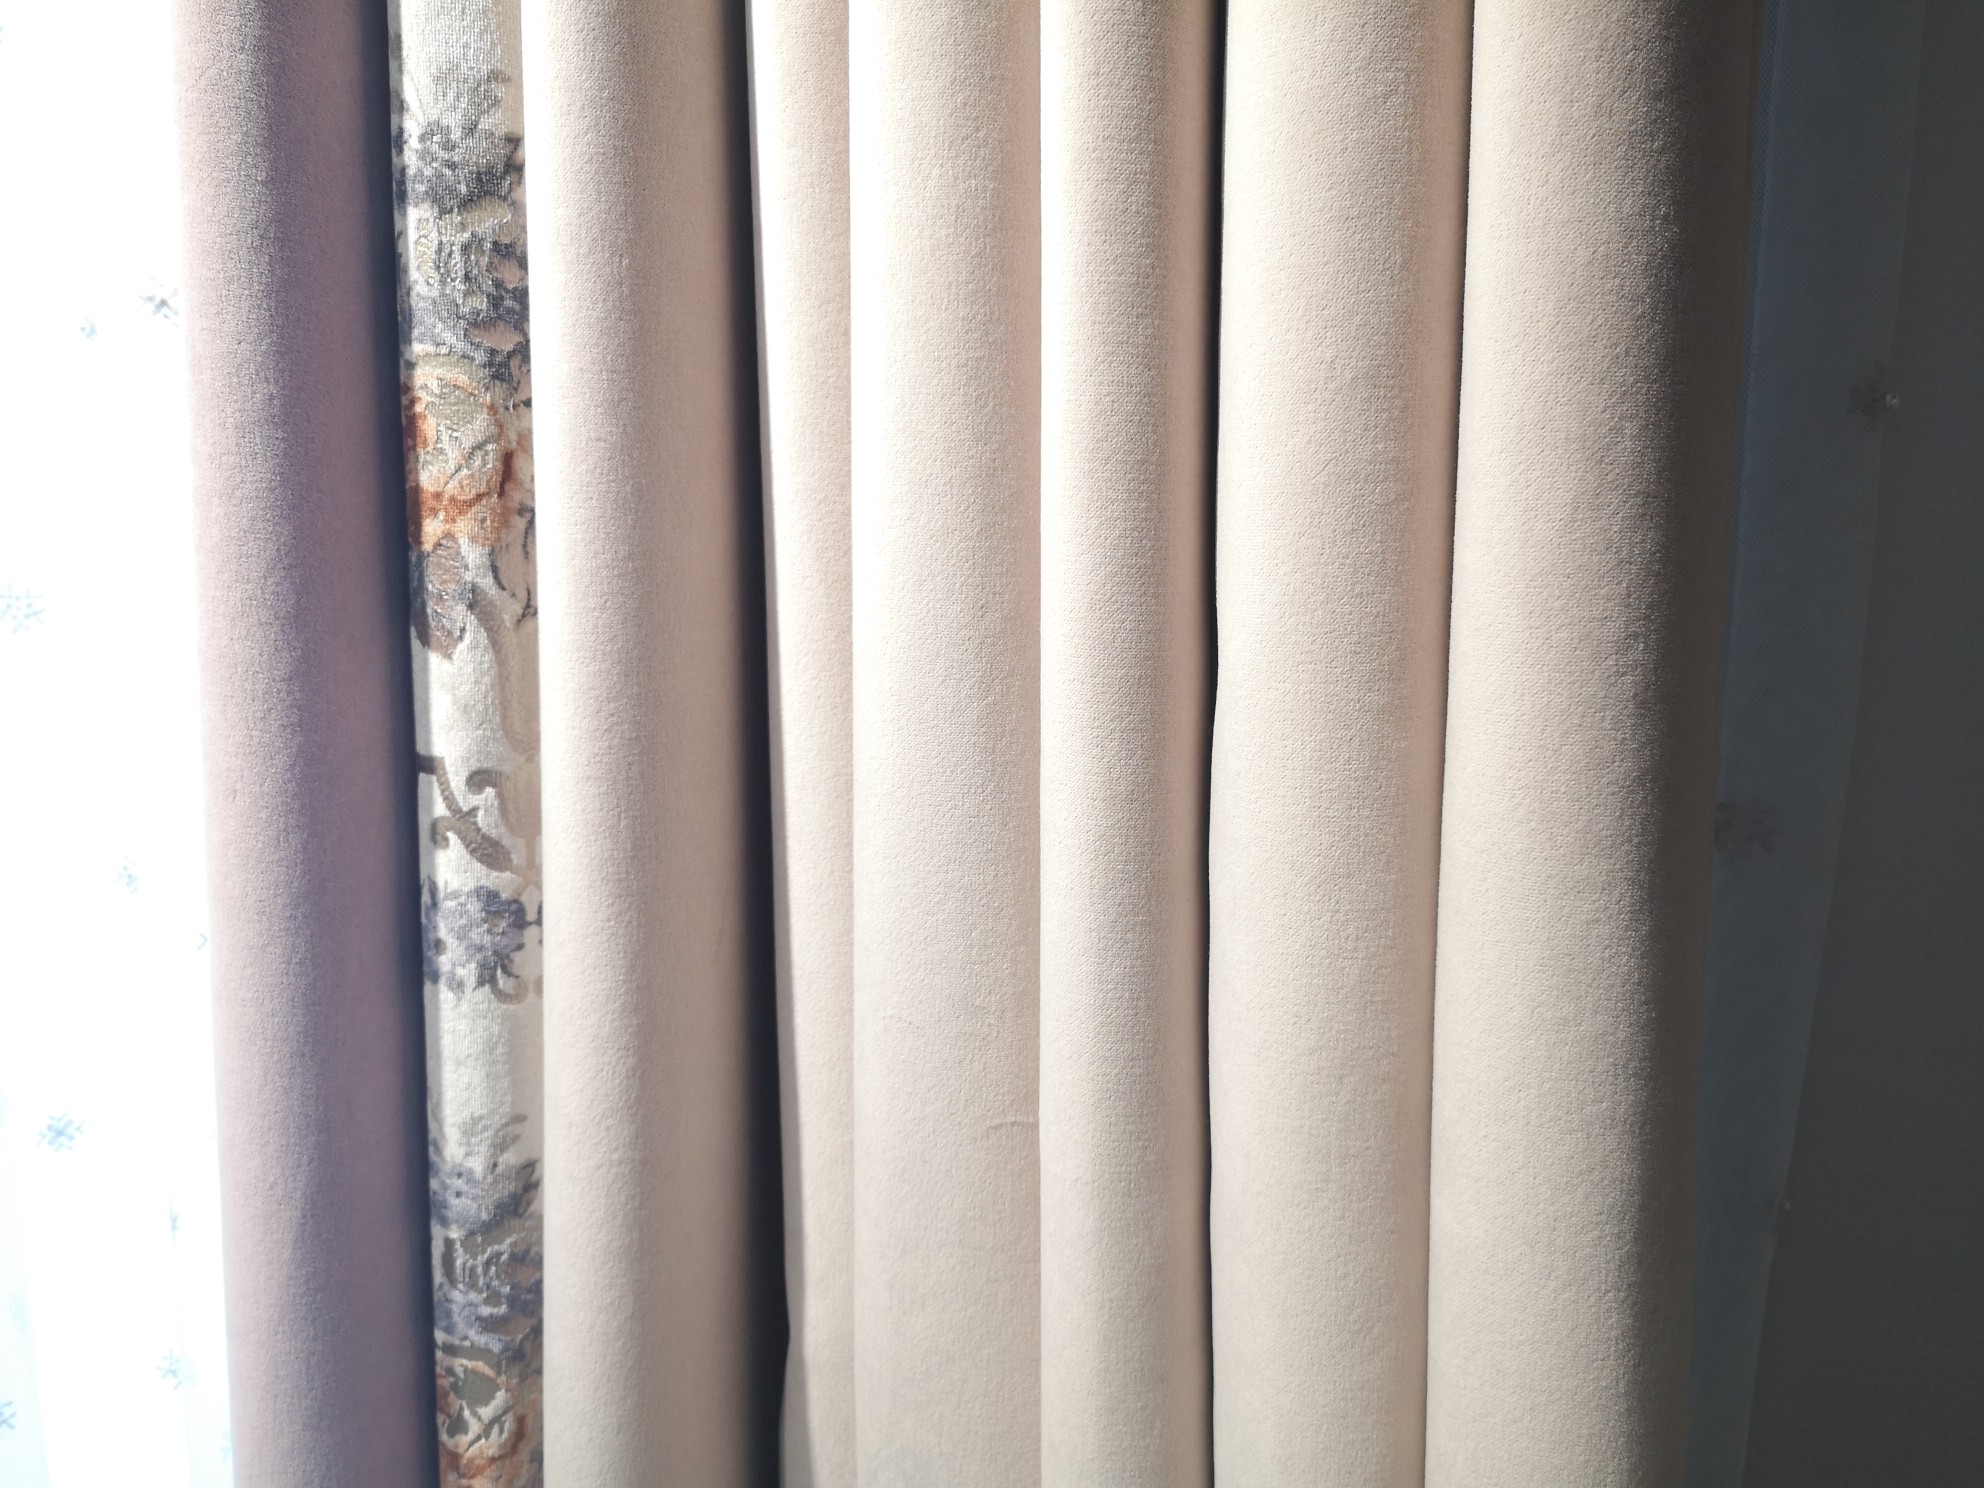 布朗斯少女风欧式风格拼接卧室窗帘高贵大气遮光价格为380元/米产品图